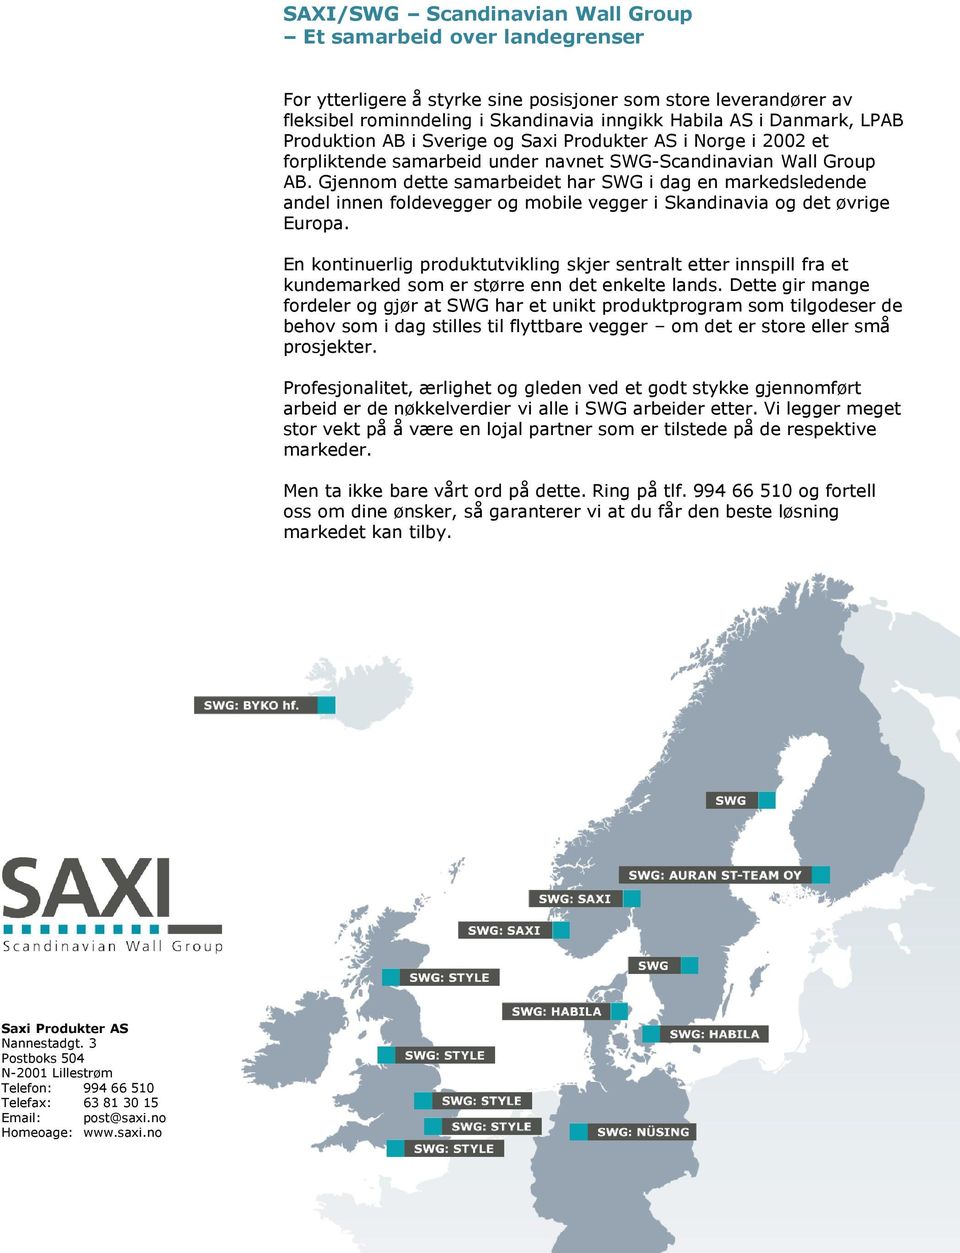 Gjennom dette samarbeidet har SWG i dag en markedsledende andel innen foldevegger og mobile vegger i Skandinavia og det øvrige Europa.